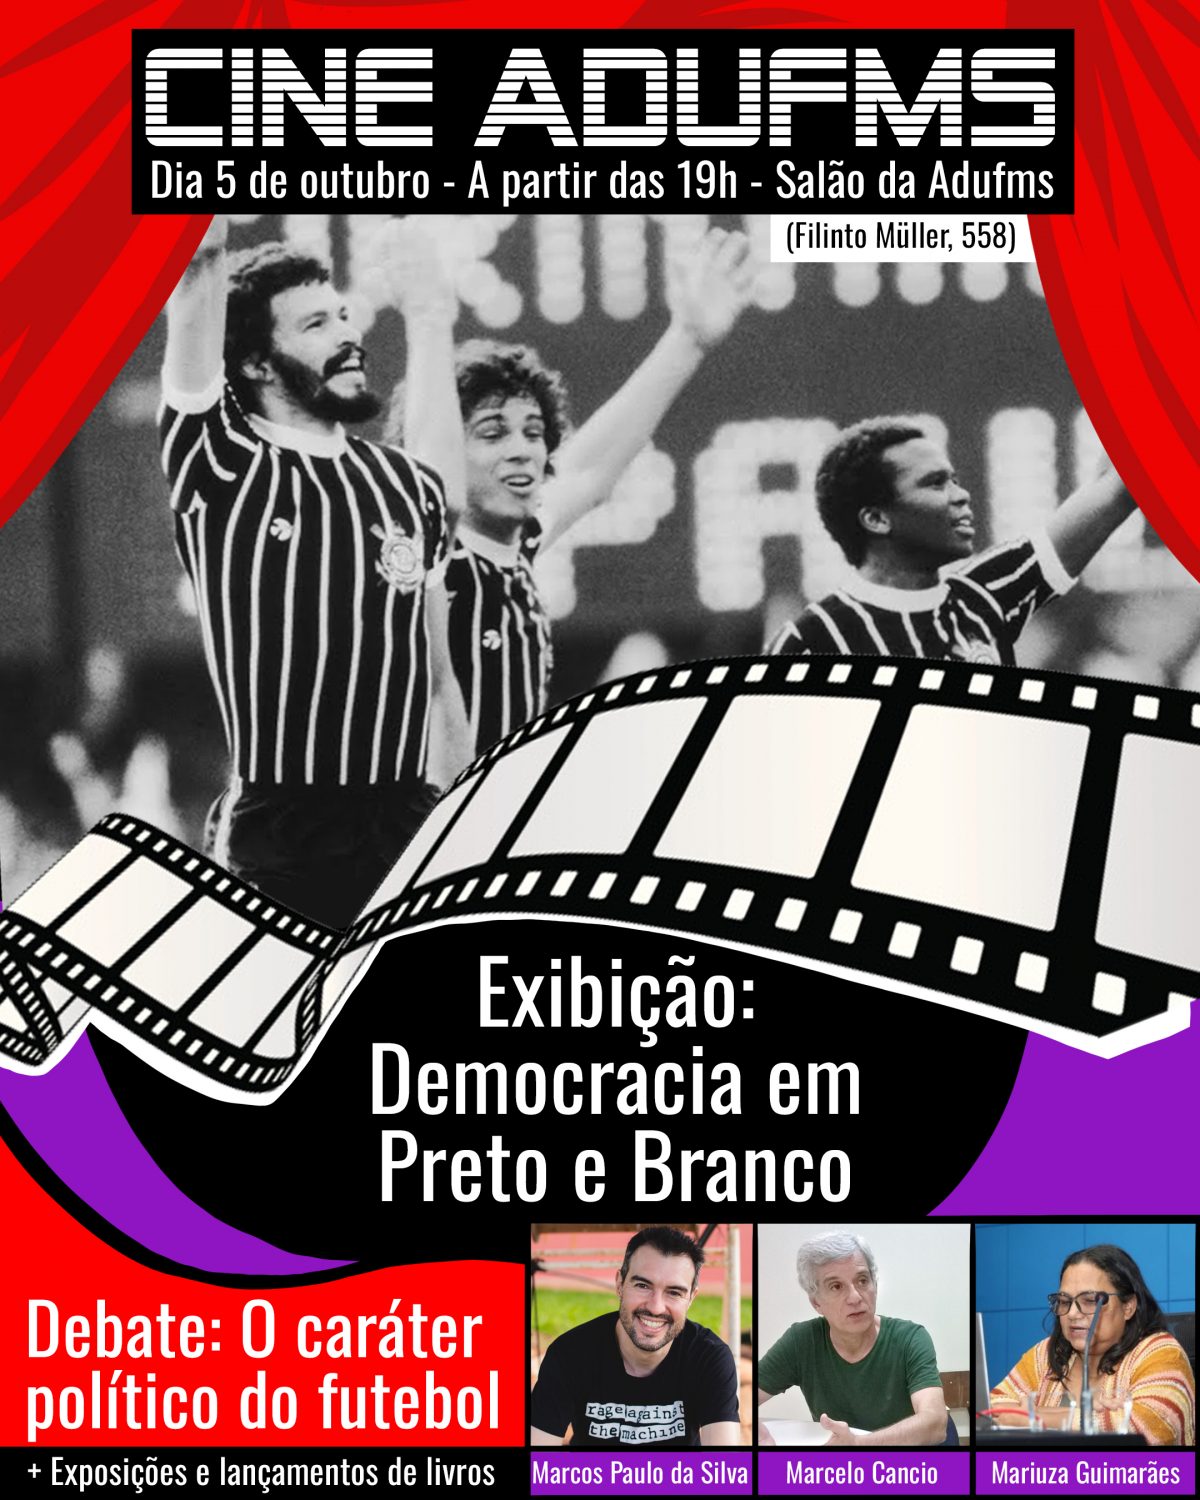 Cine Adufms estreia com “Democracia em Preto e Branco”, lançamento de livro e debate